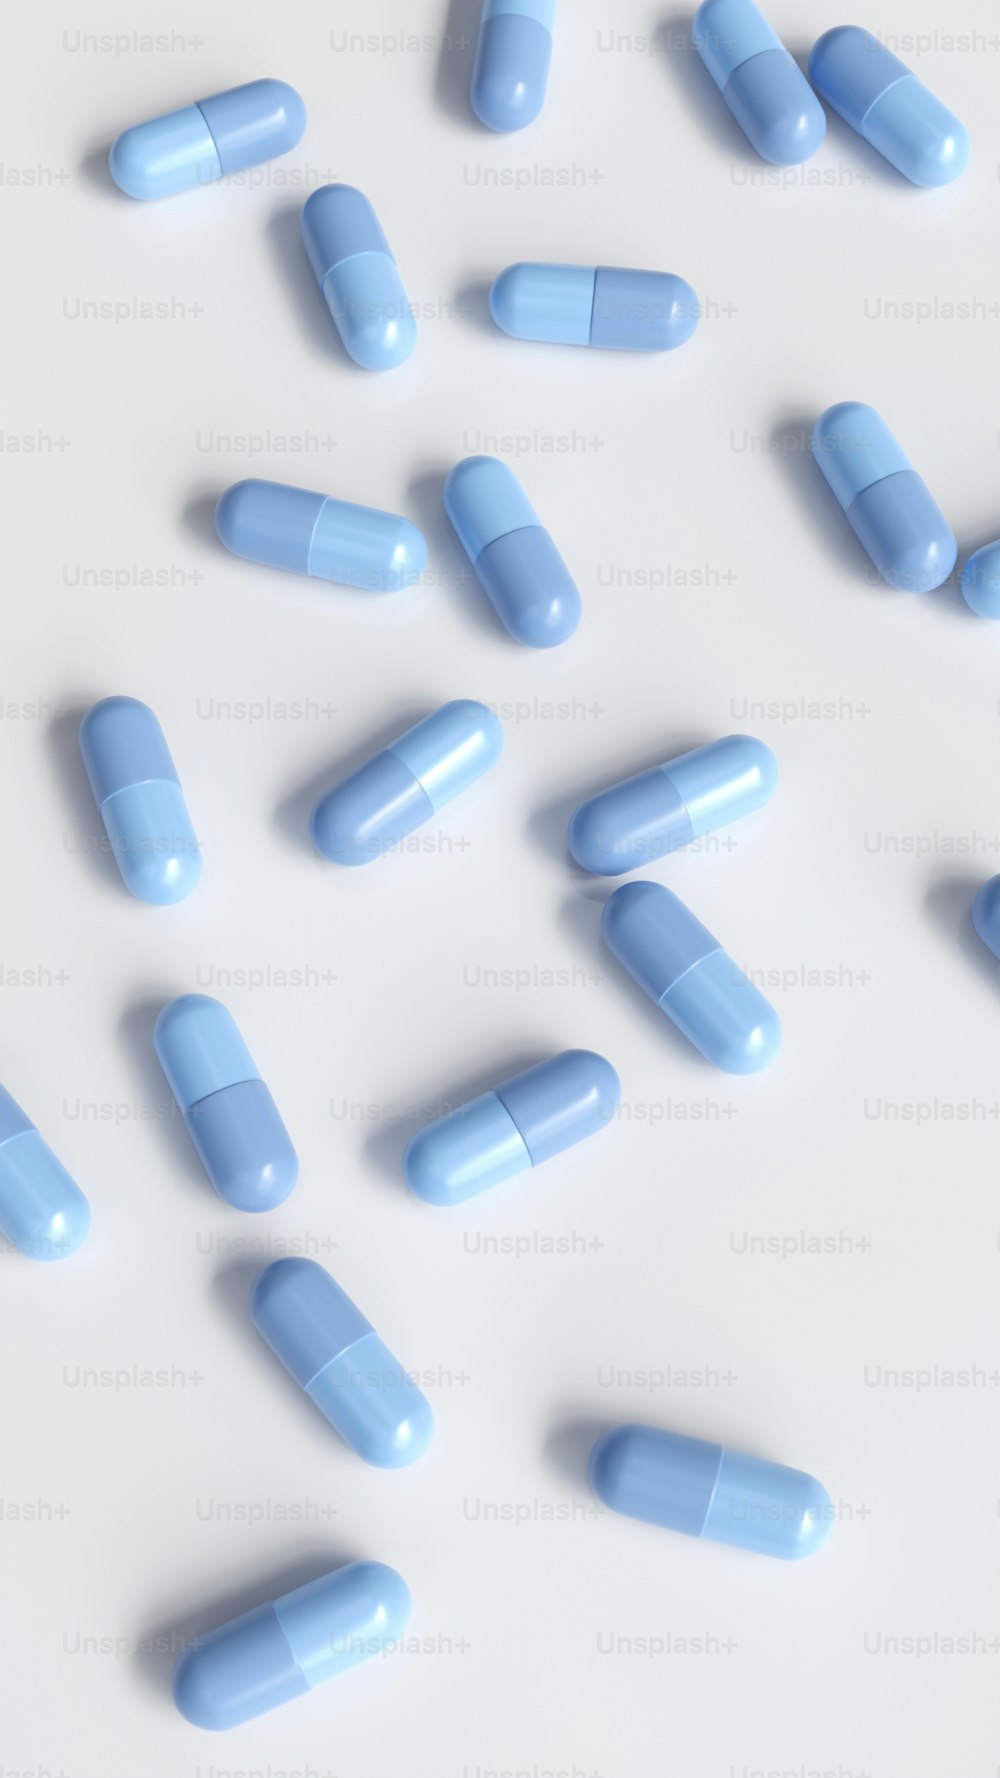 pílulas azuis estão espalhadas em uma superfície branca